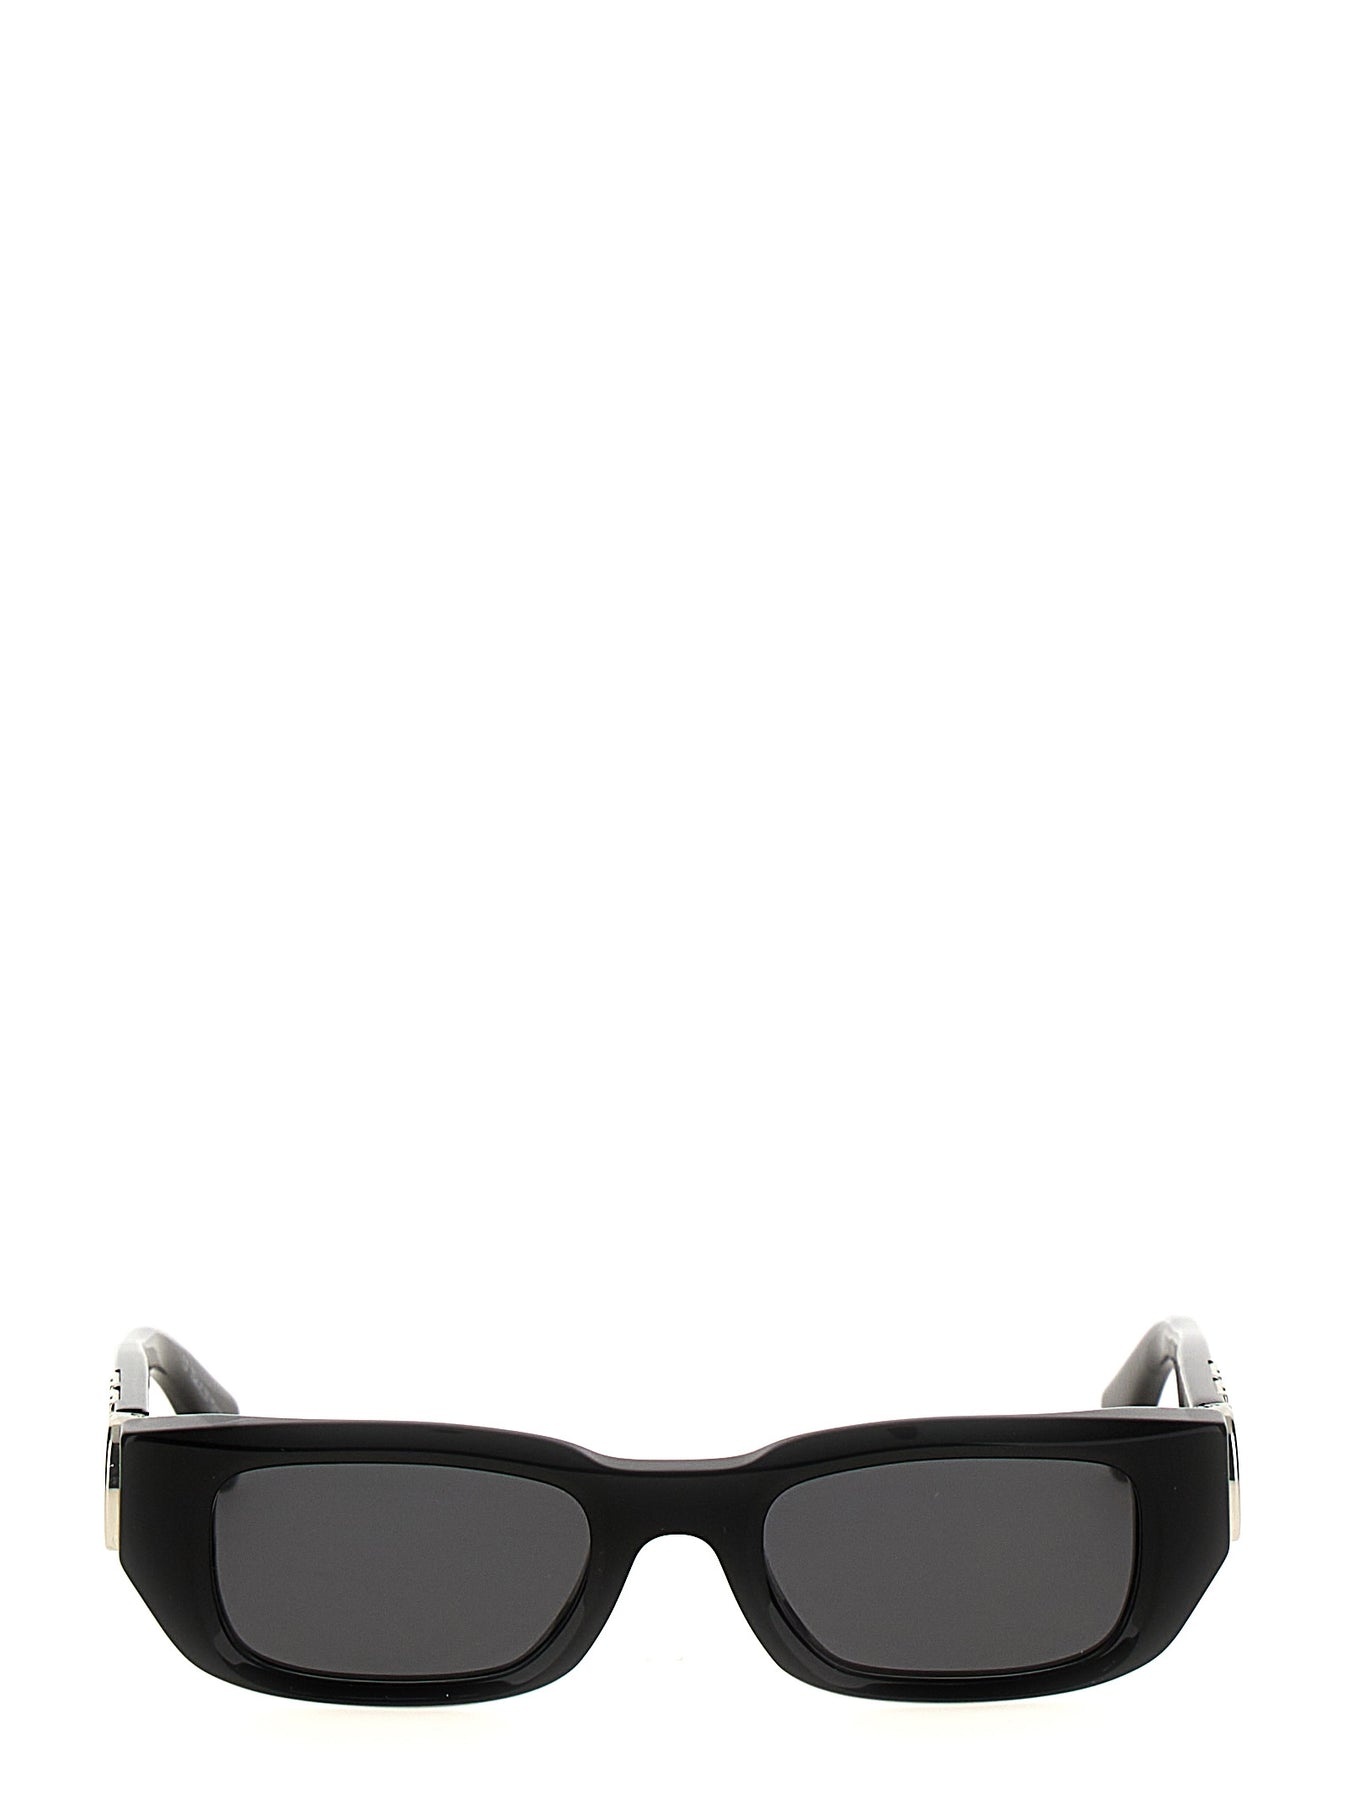 Fillmore Sunglasses Black - 1